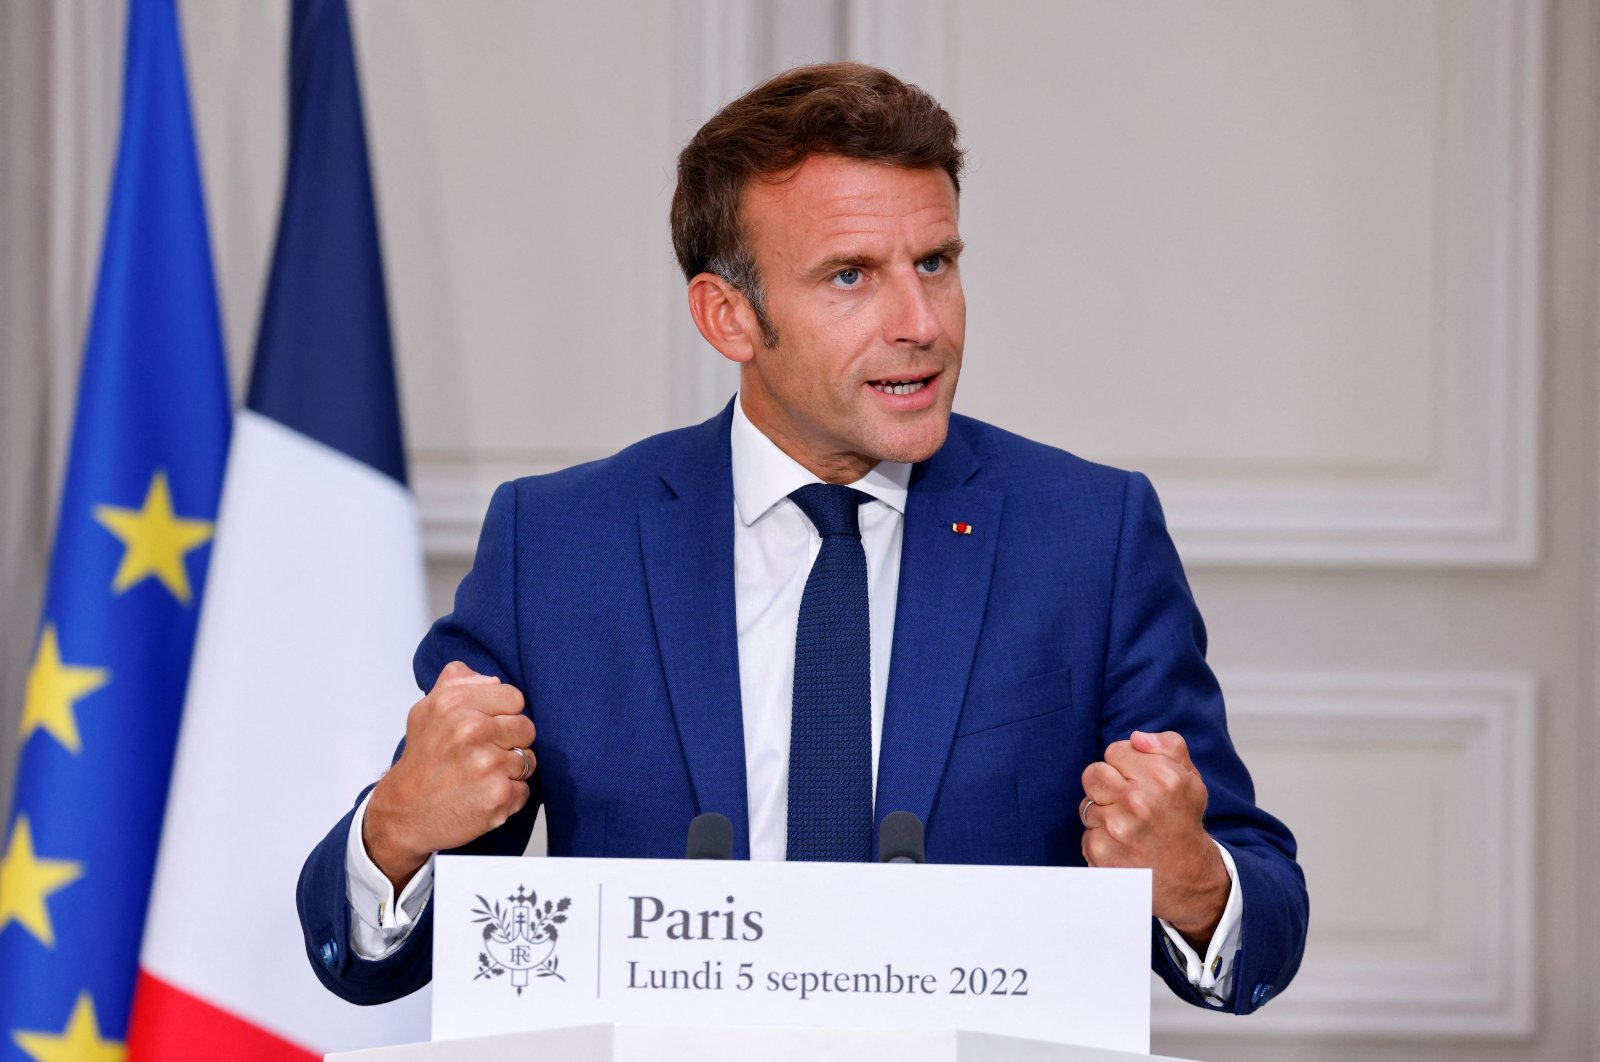 Prancis, Jerman saling membantu mengatasi krisis energi: Macron